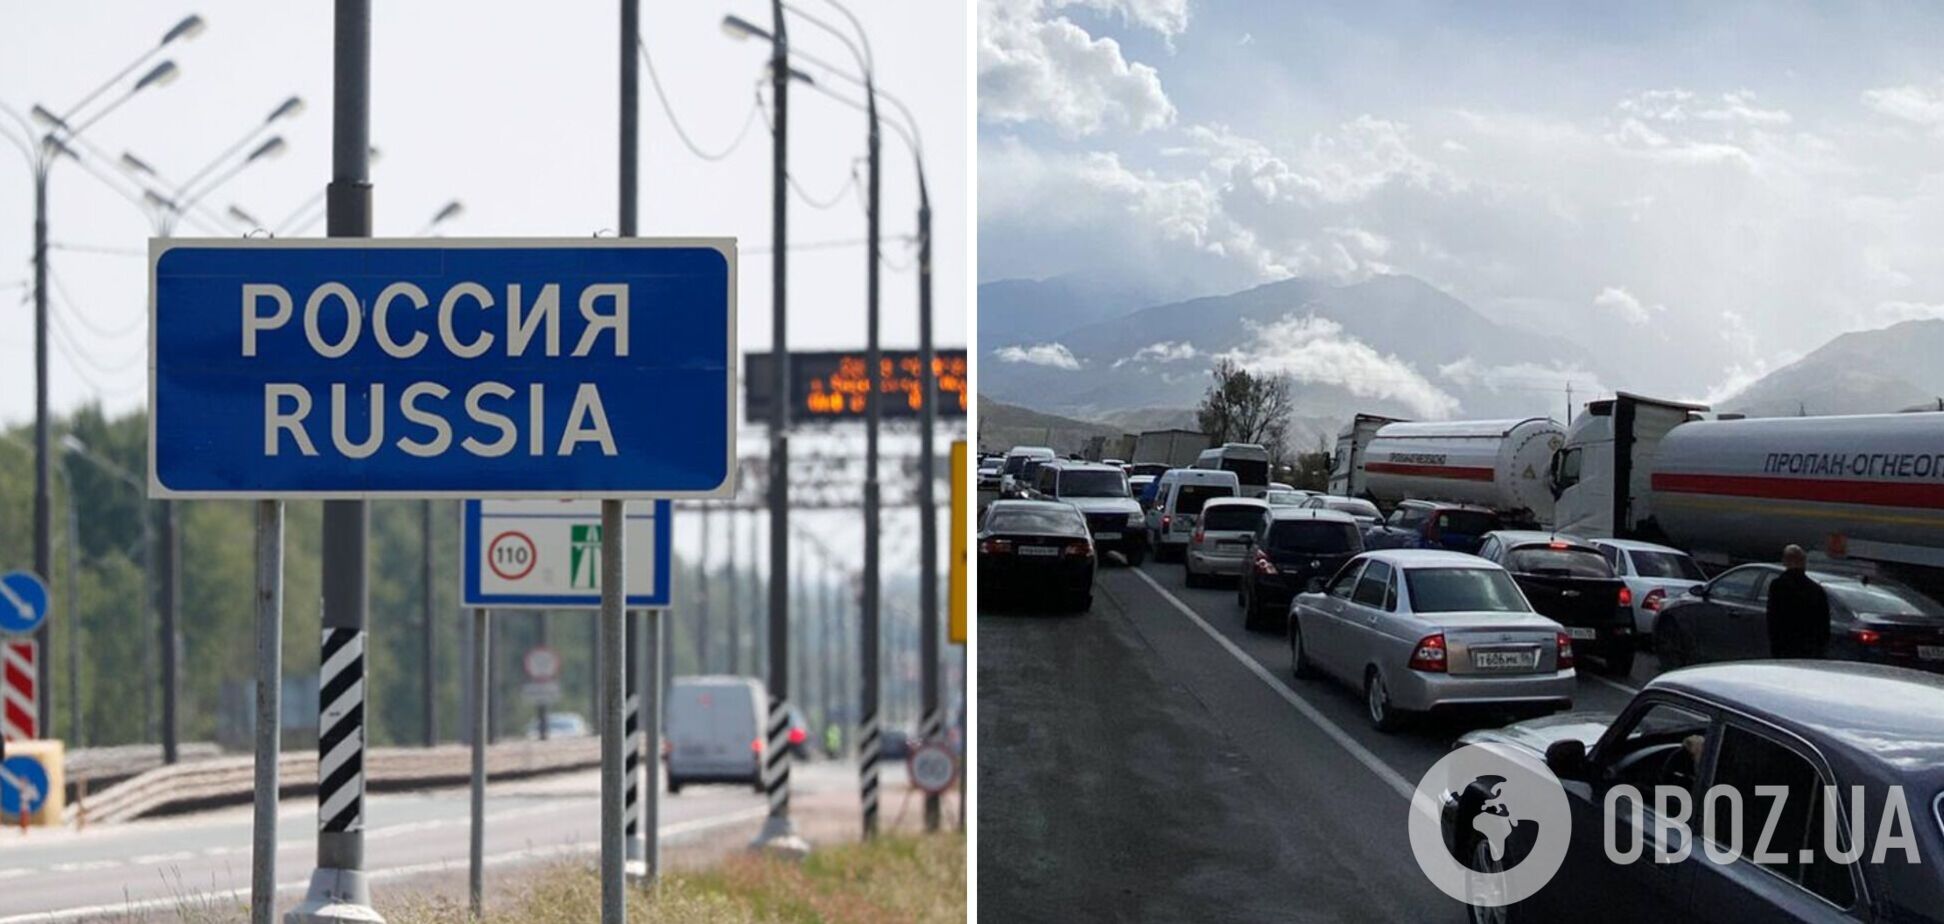 У Росії з 1 березня заборонять перетин кордону РФ на авто без попереднього резервування дати і часу